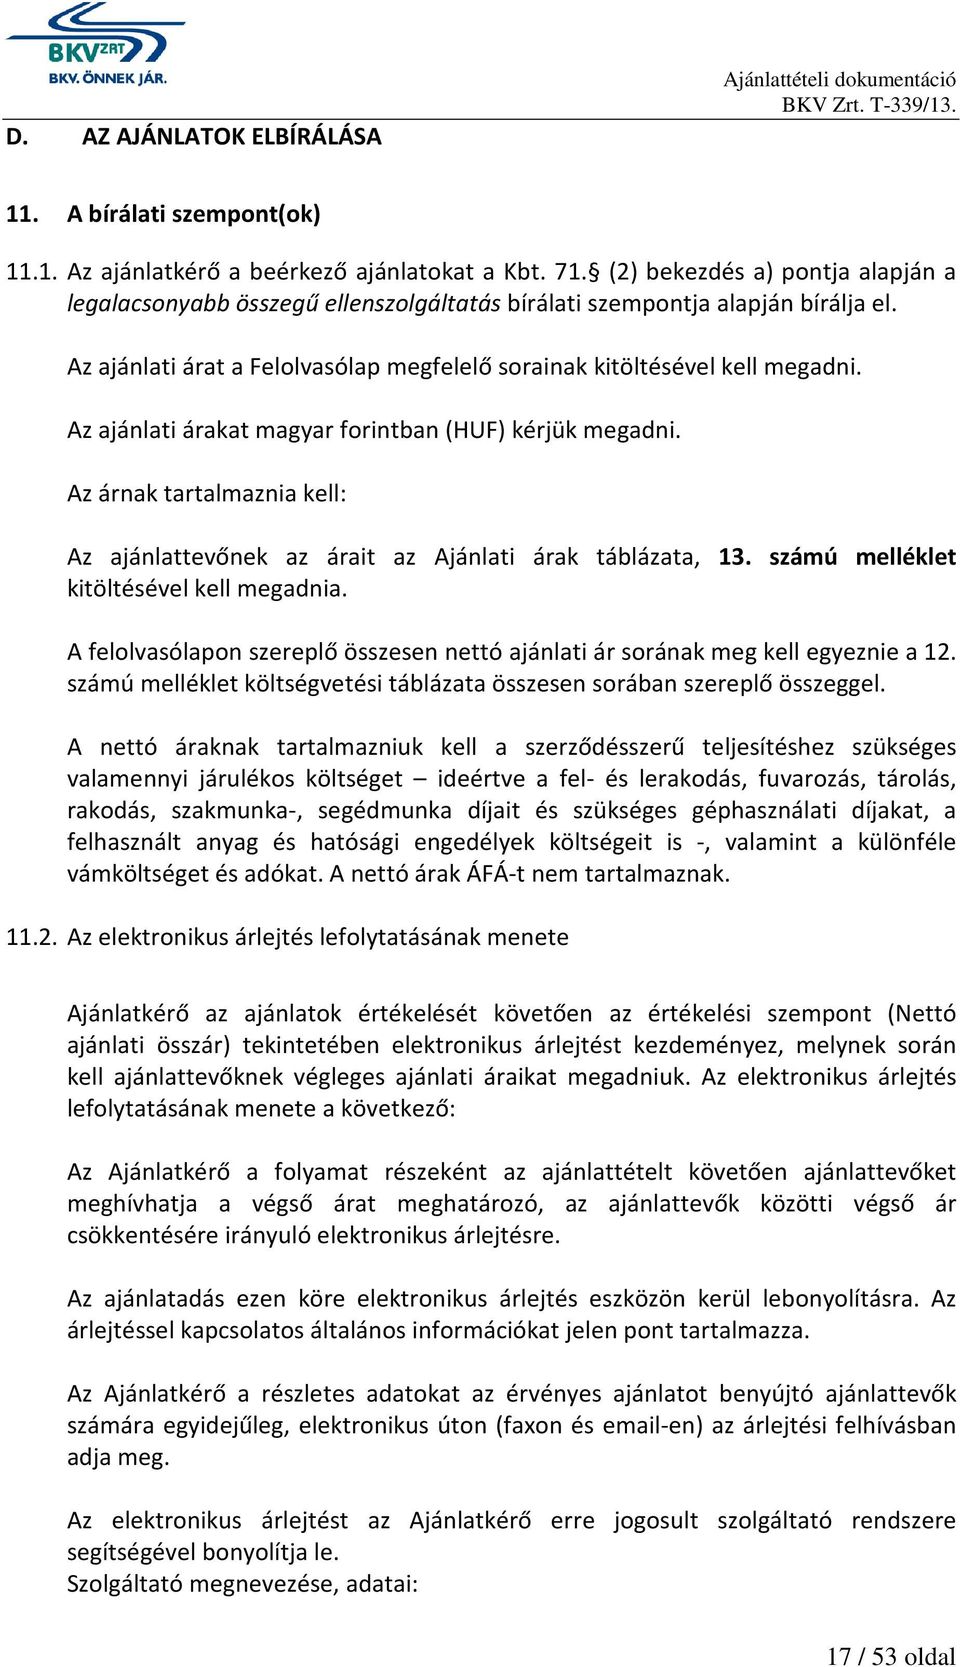 Az ajánlati árakat magyar forintban (HUF) kérjük megadni. Az árnak tartalmaznia kell: Az ajánlattevőnek az árait az Ajánlati árak táblázata, 13. számú melléklet kitöltésével kell megadnia.